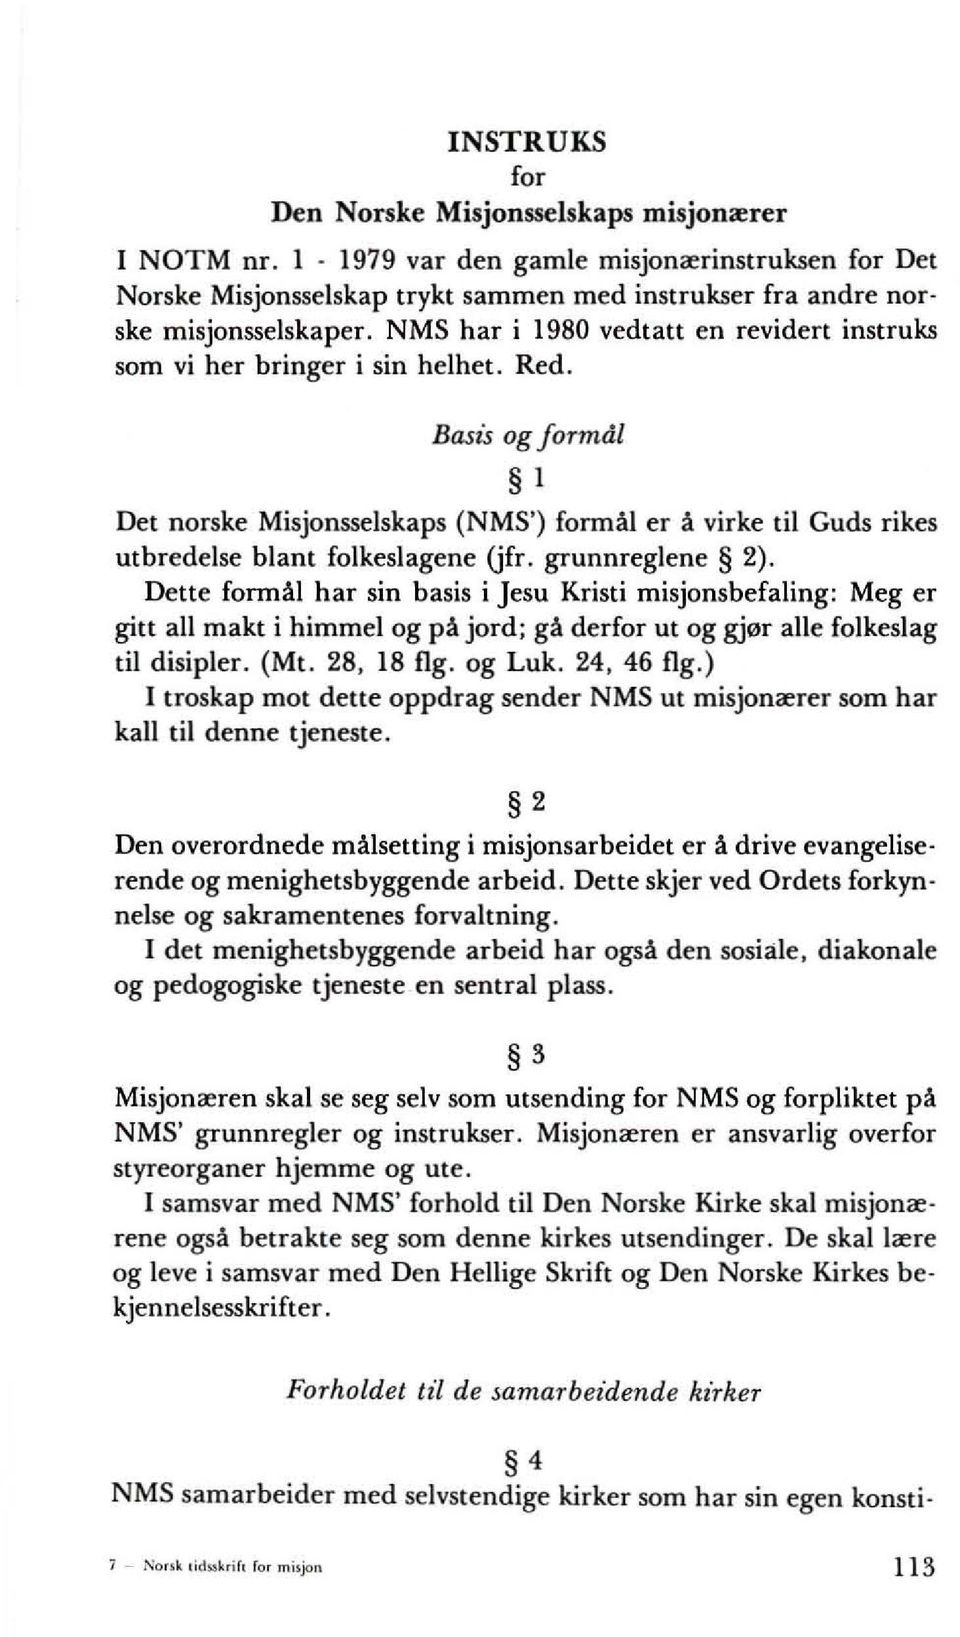 Basis ag jarmdl I Det norske Misjonsselskaps (NMS') formal er a virke til Guds rikes utbredelse blant folkeslagene (jfr. grunnreglene 2).